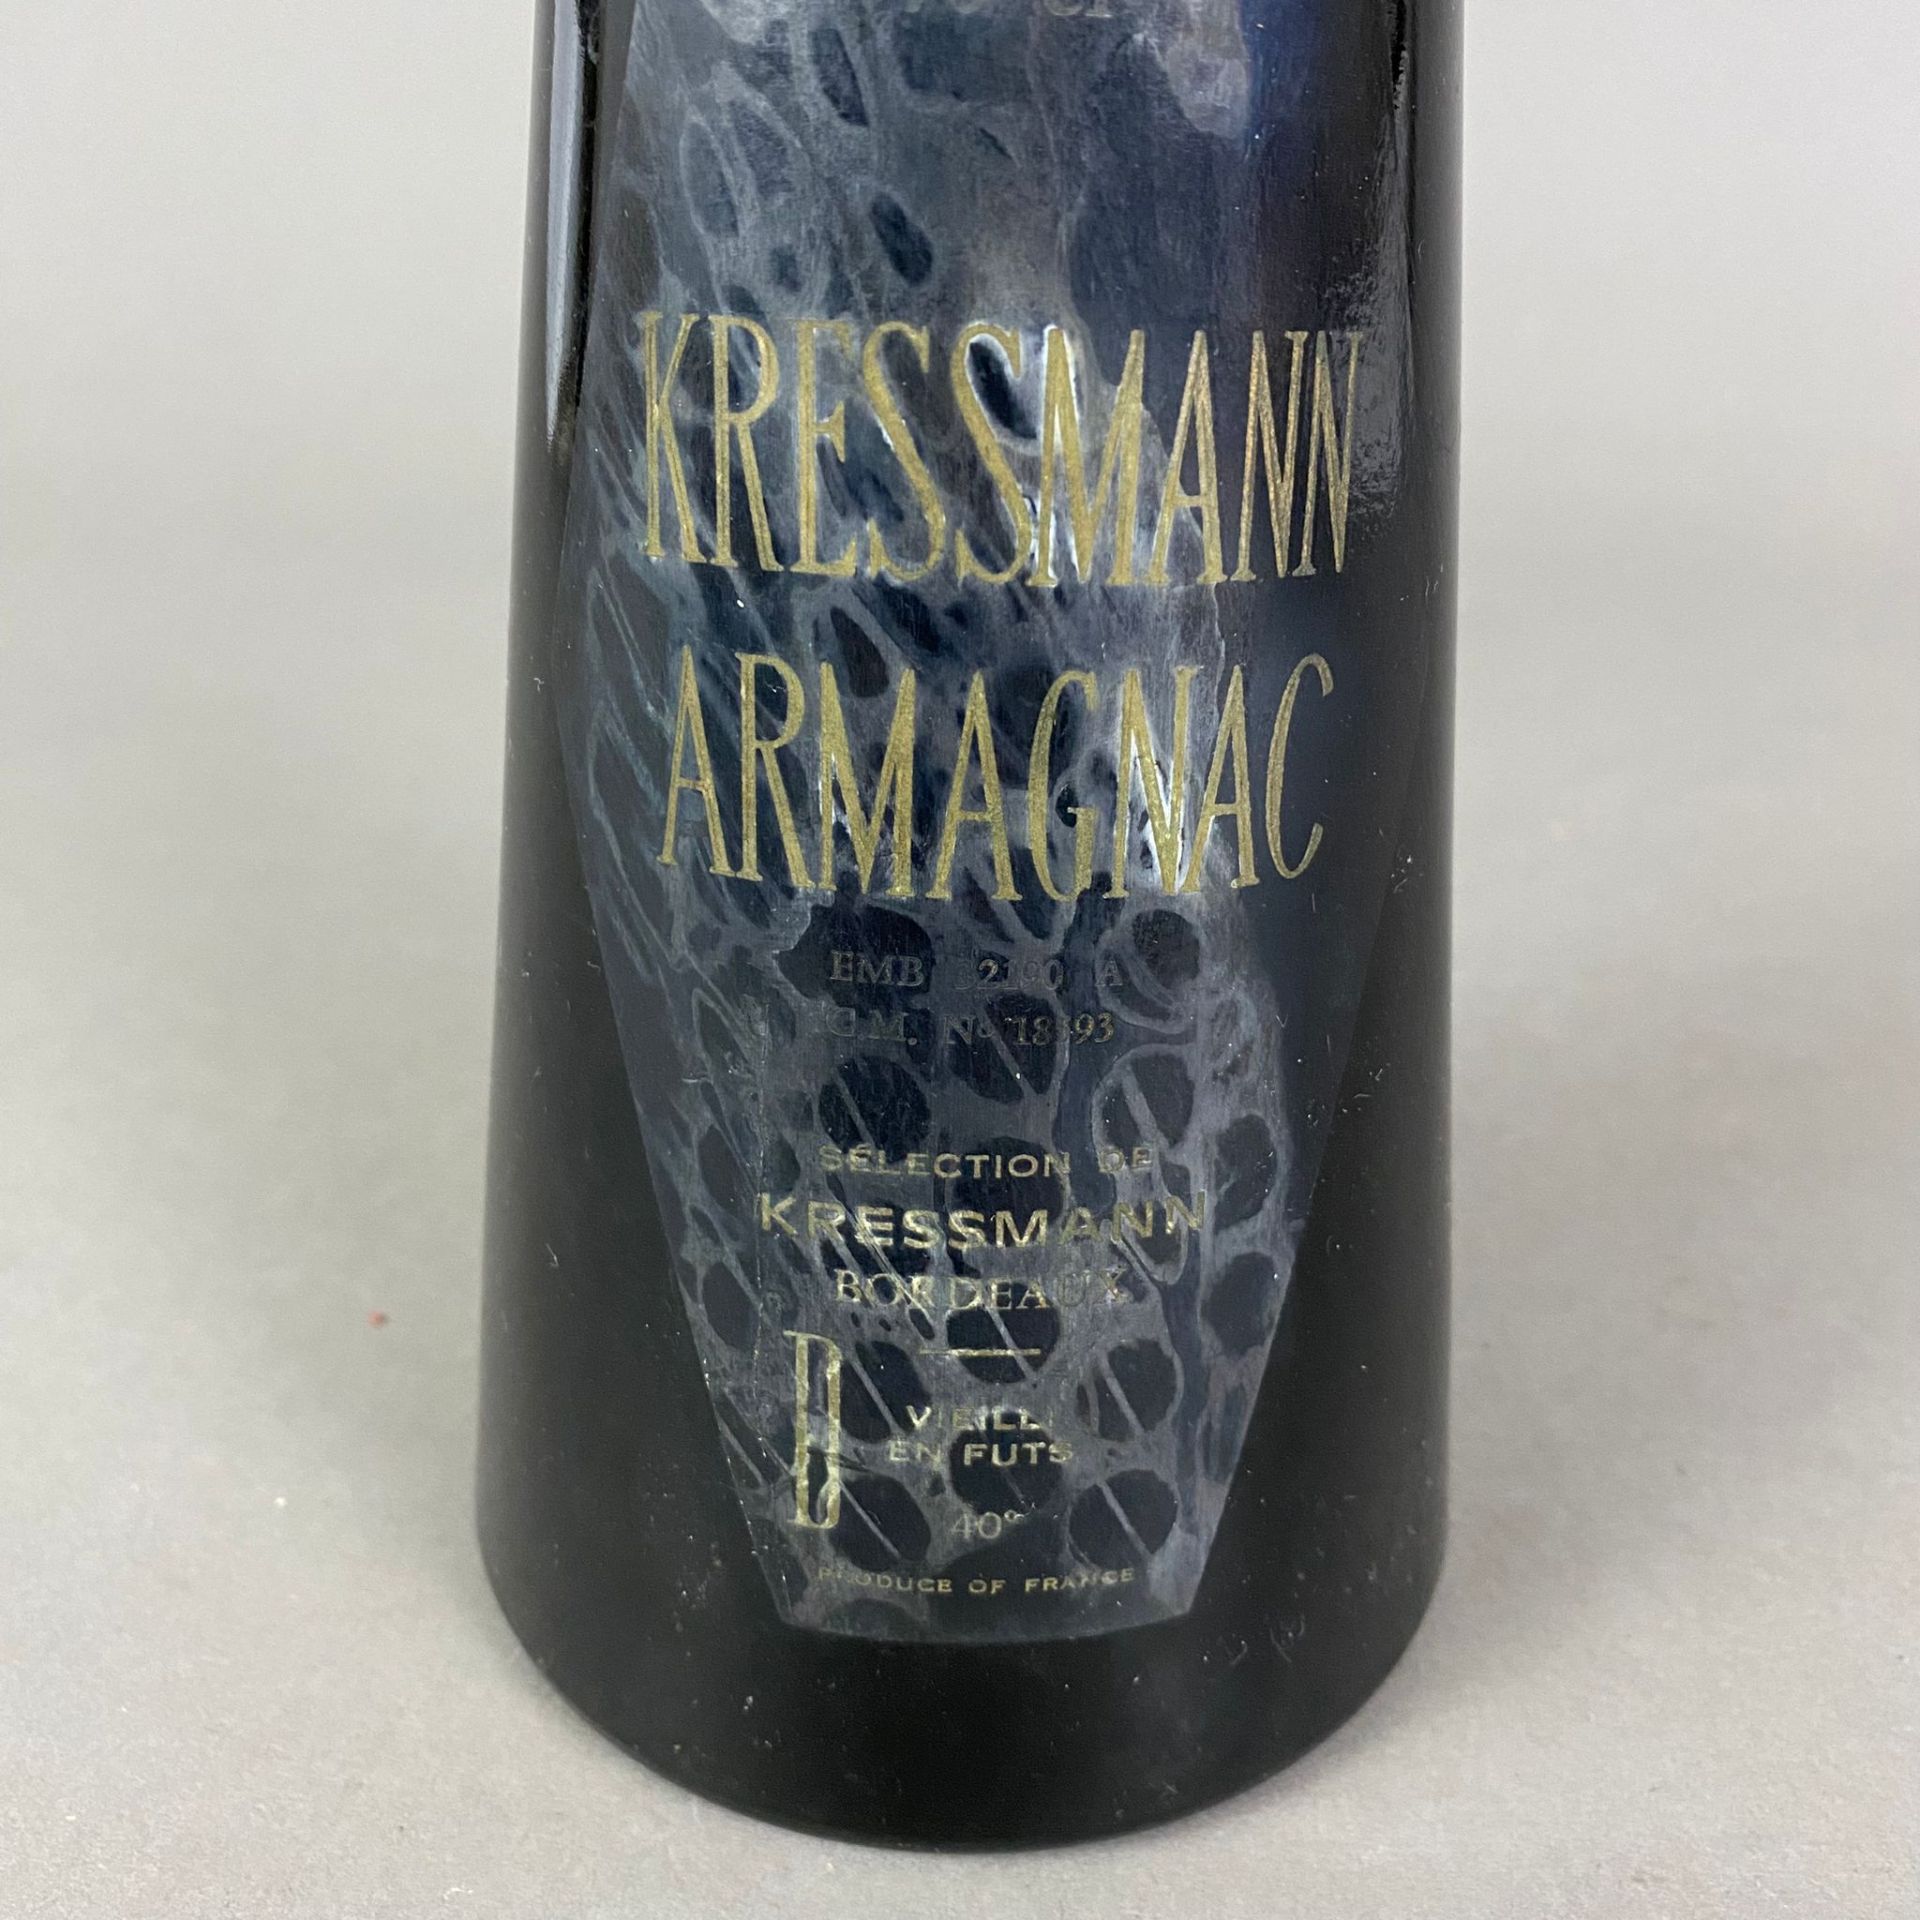 Armagnac - Kressmann 1933, abgefüllt 2000, 70 cl, 40%, Etikett verschmutzt, teilweise unleserlich - Bild 3 aus 4